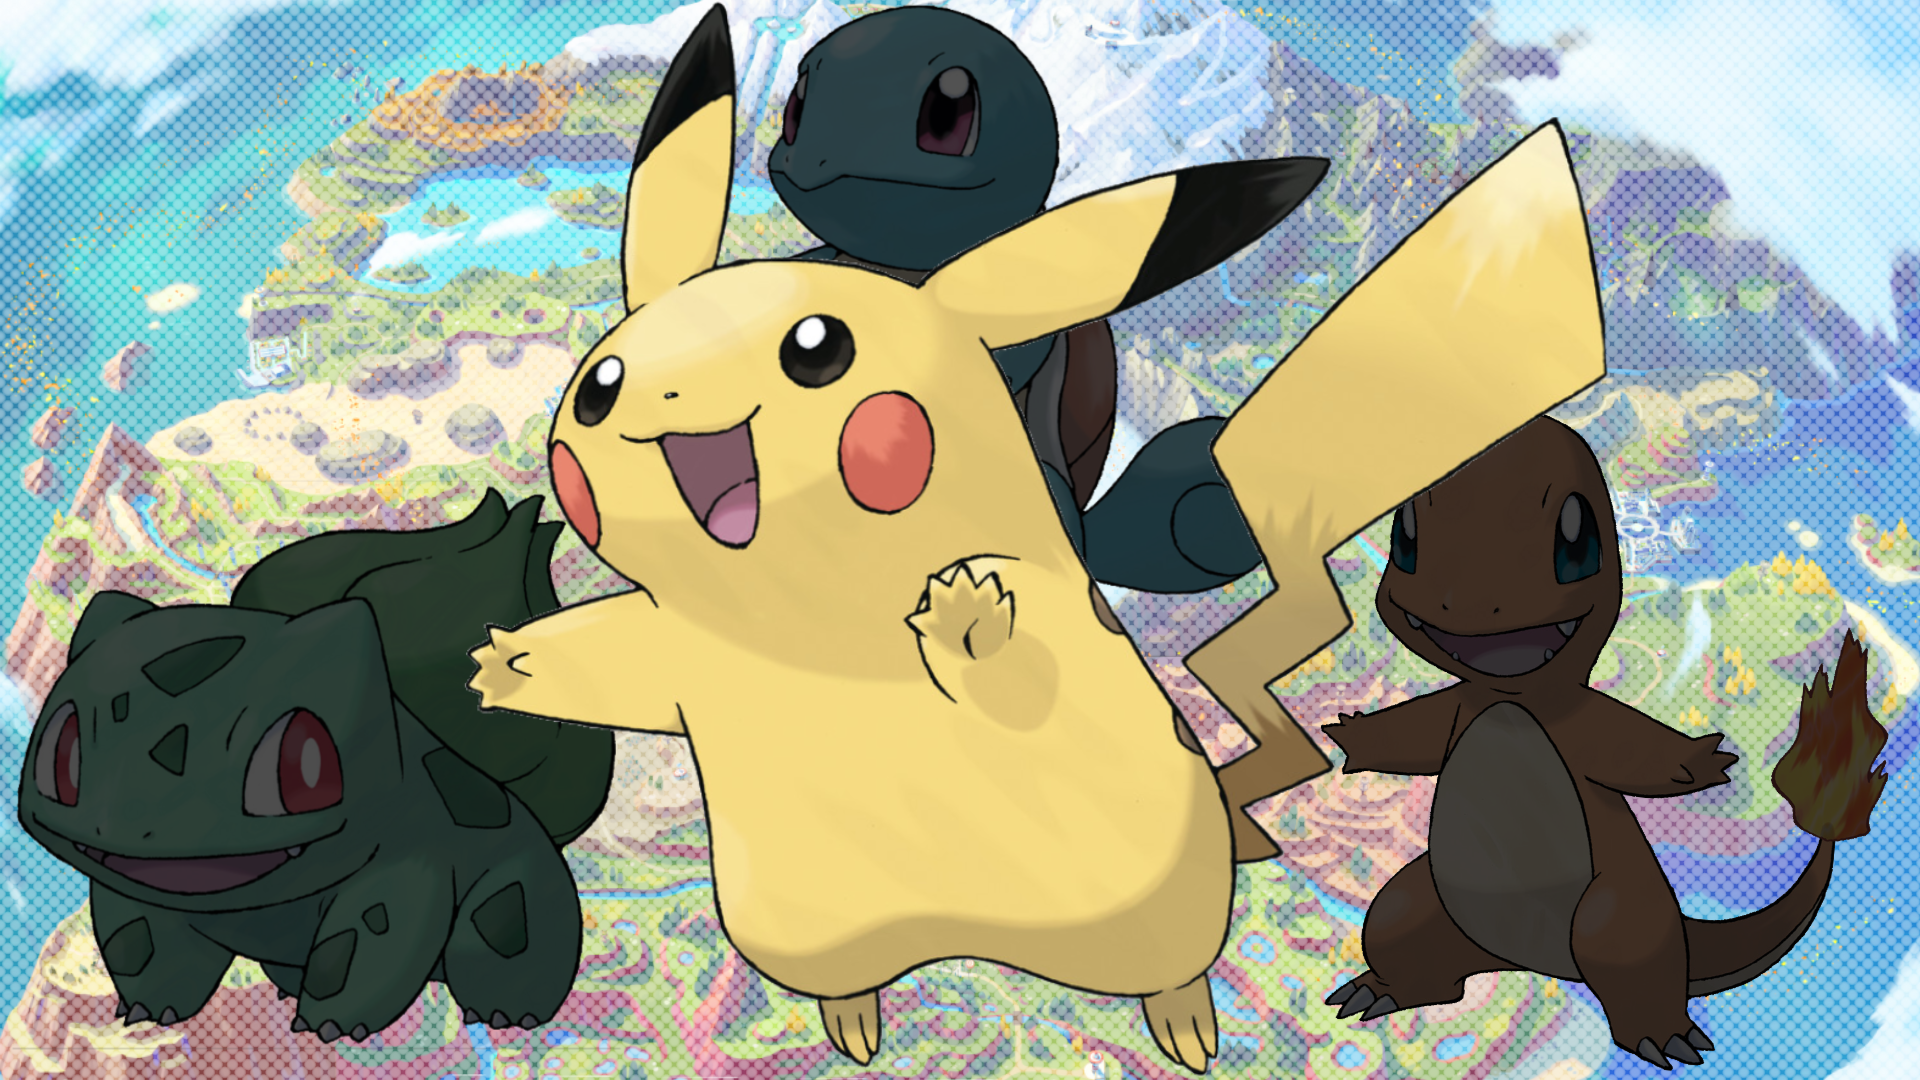 Vì sao Ash lại chọn khởi đầu với Pikachu chứ không phải bất cứ Pokémon nào khác? - ảnh 2